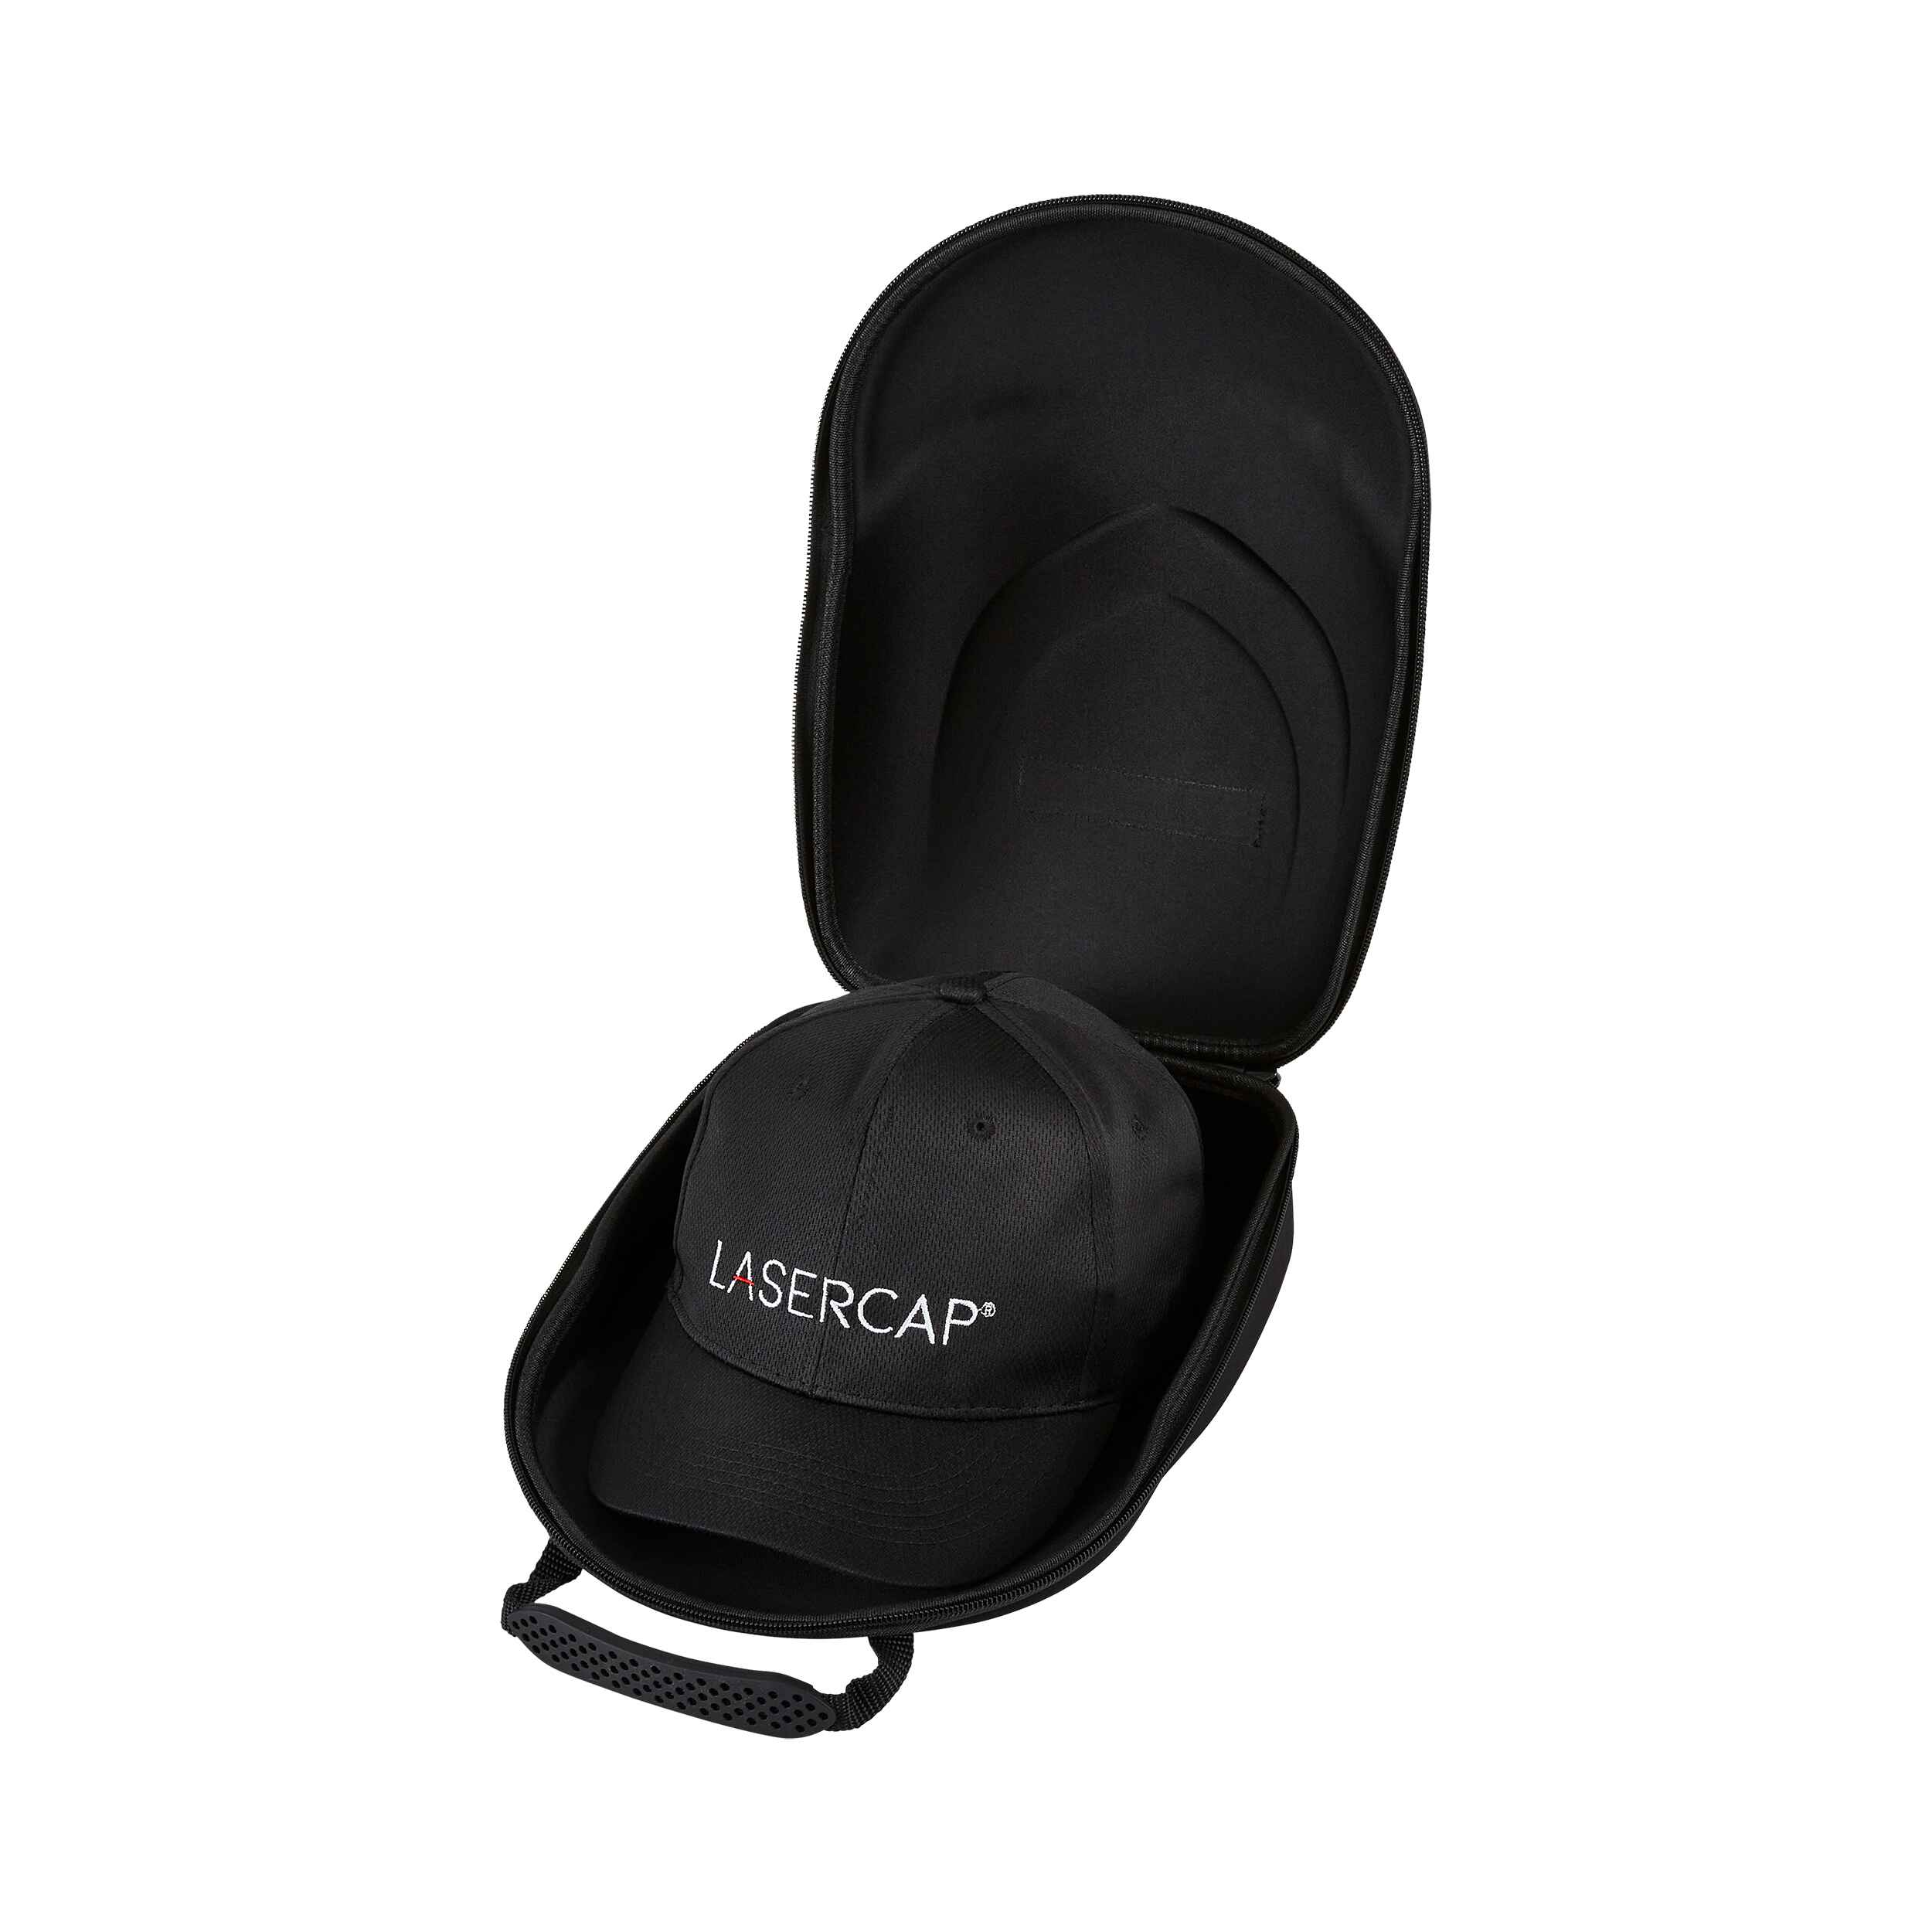 LaserCap black foam carrying case open with cap inside